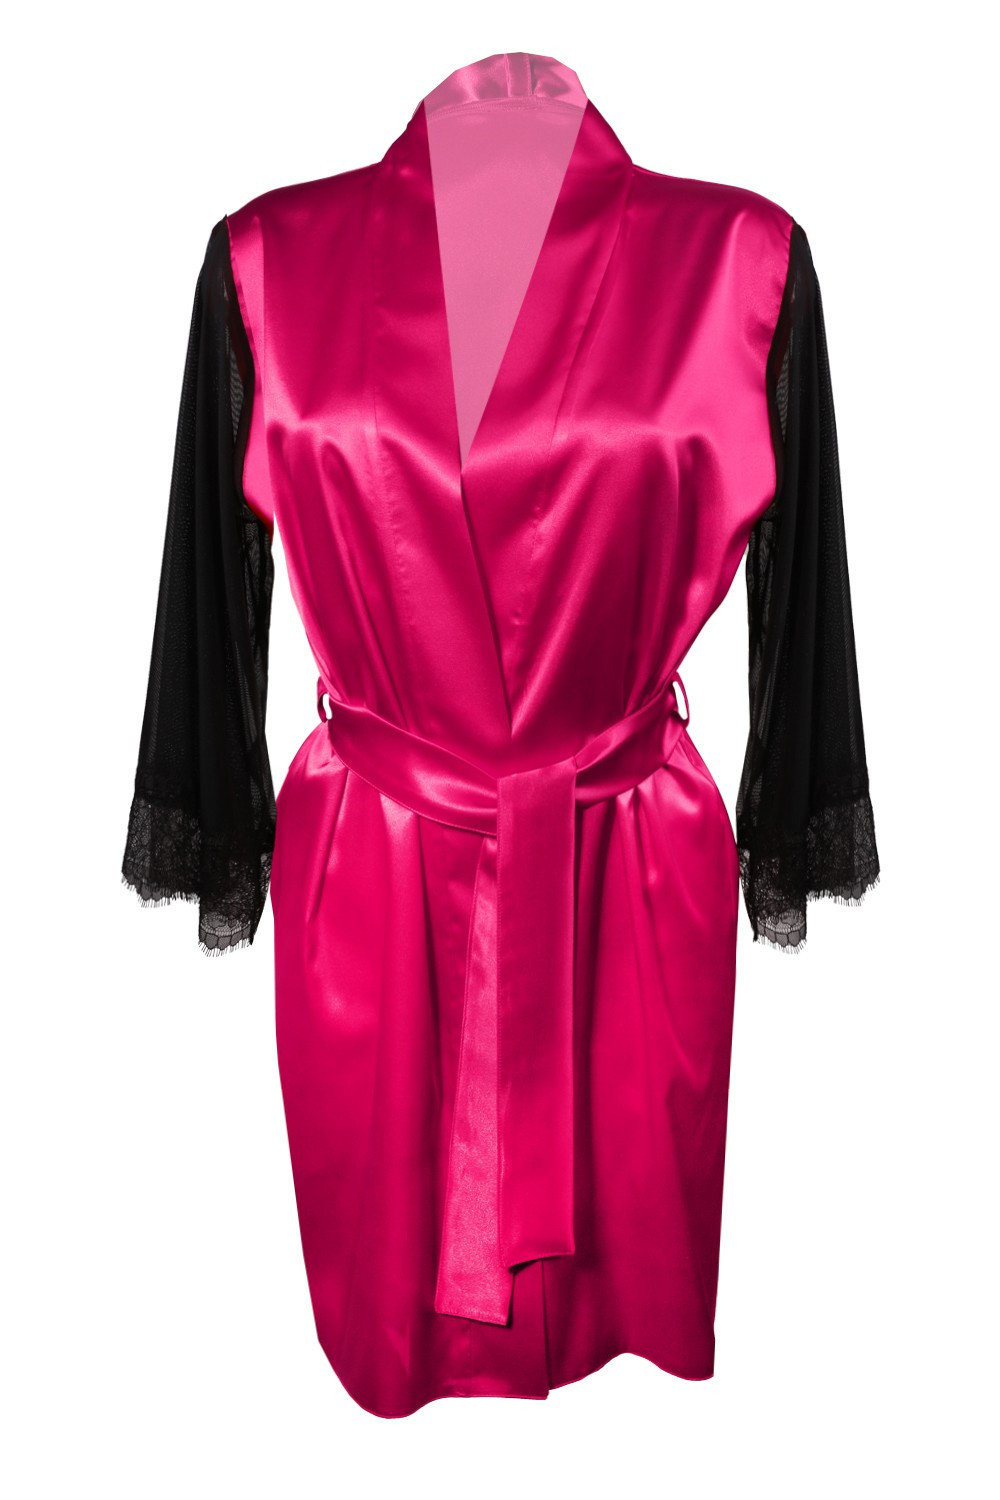 Housecoat model 18227249 Dark Pink XL Dark Pink - DKaren